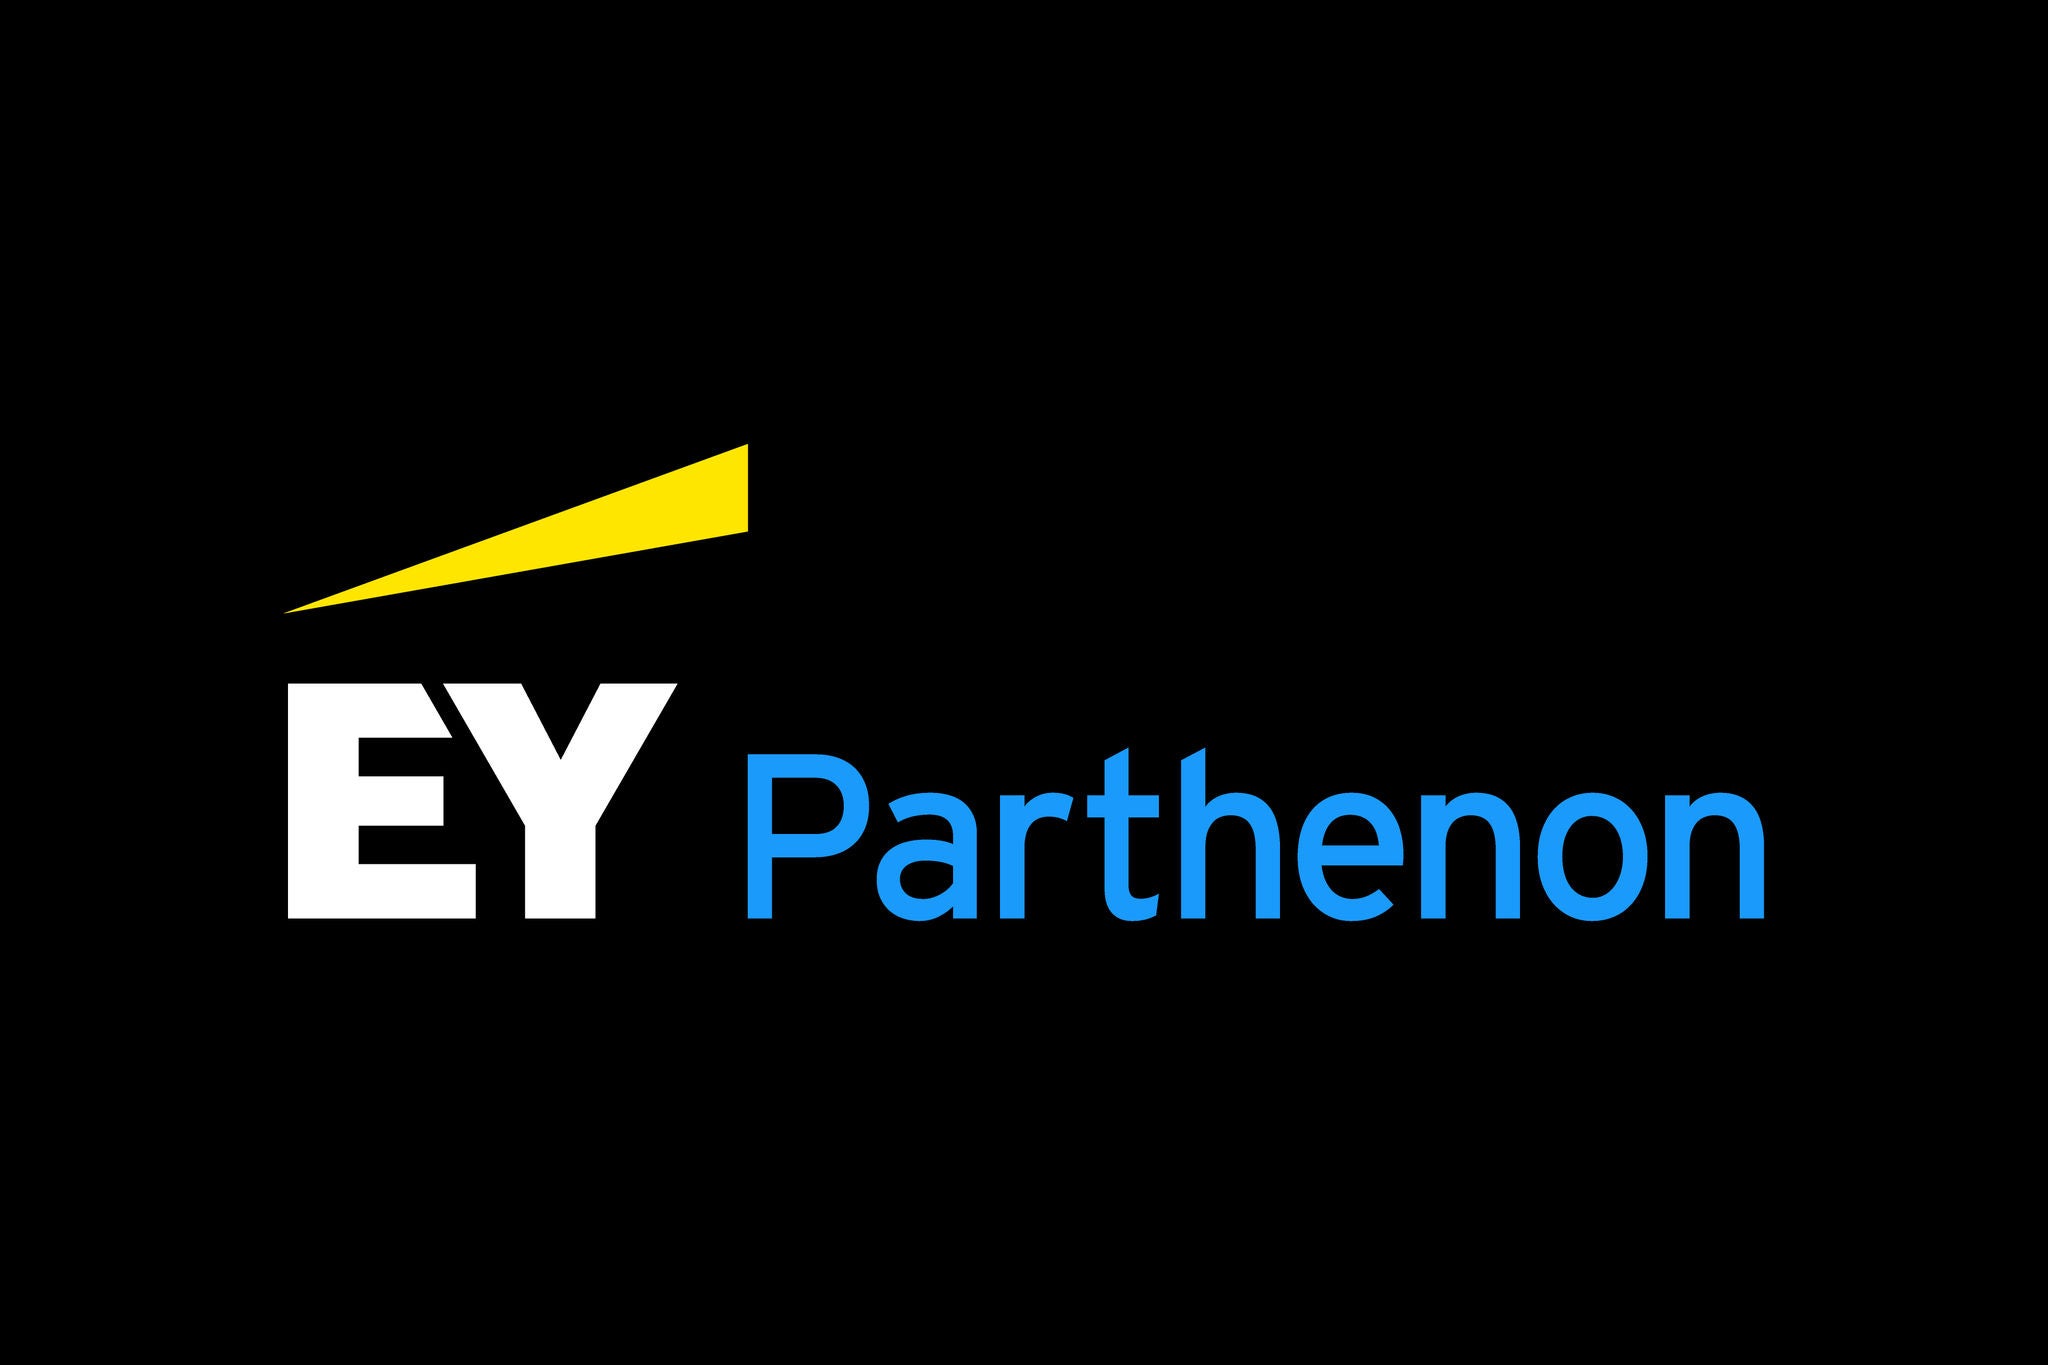 EY Parthenon logo image